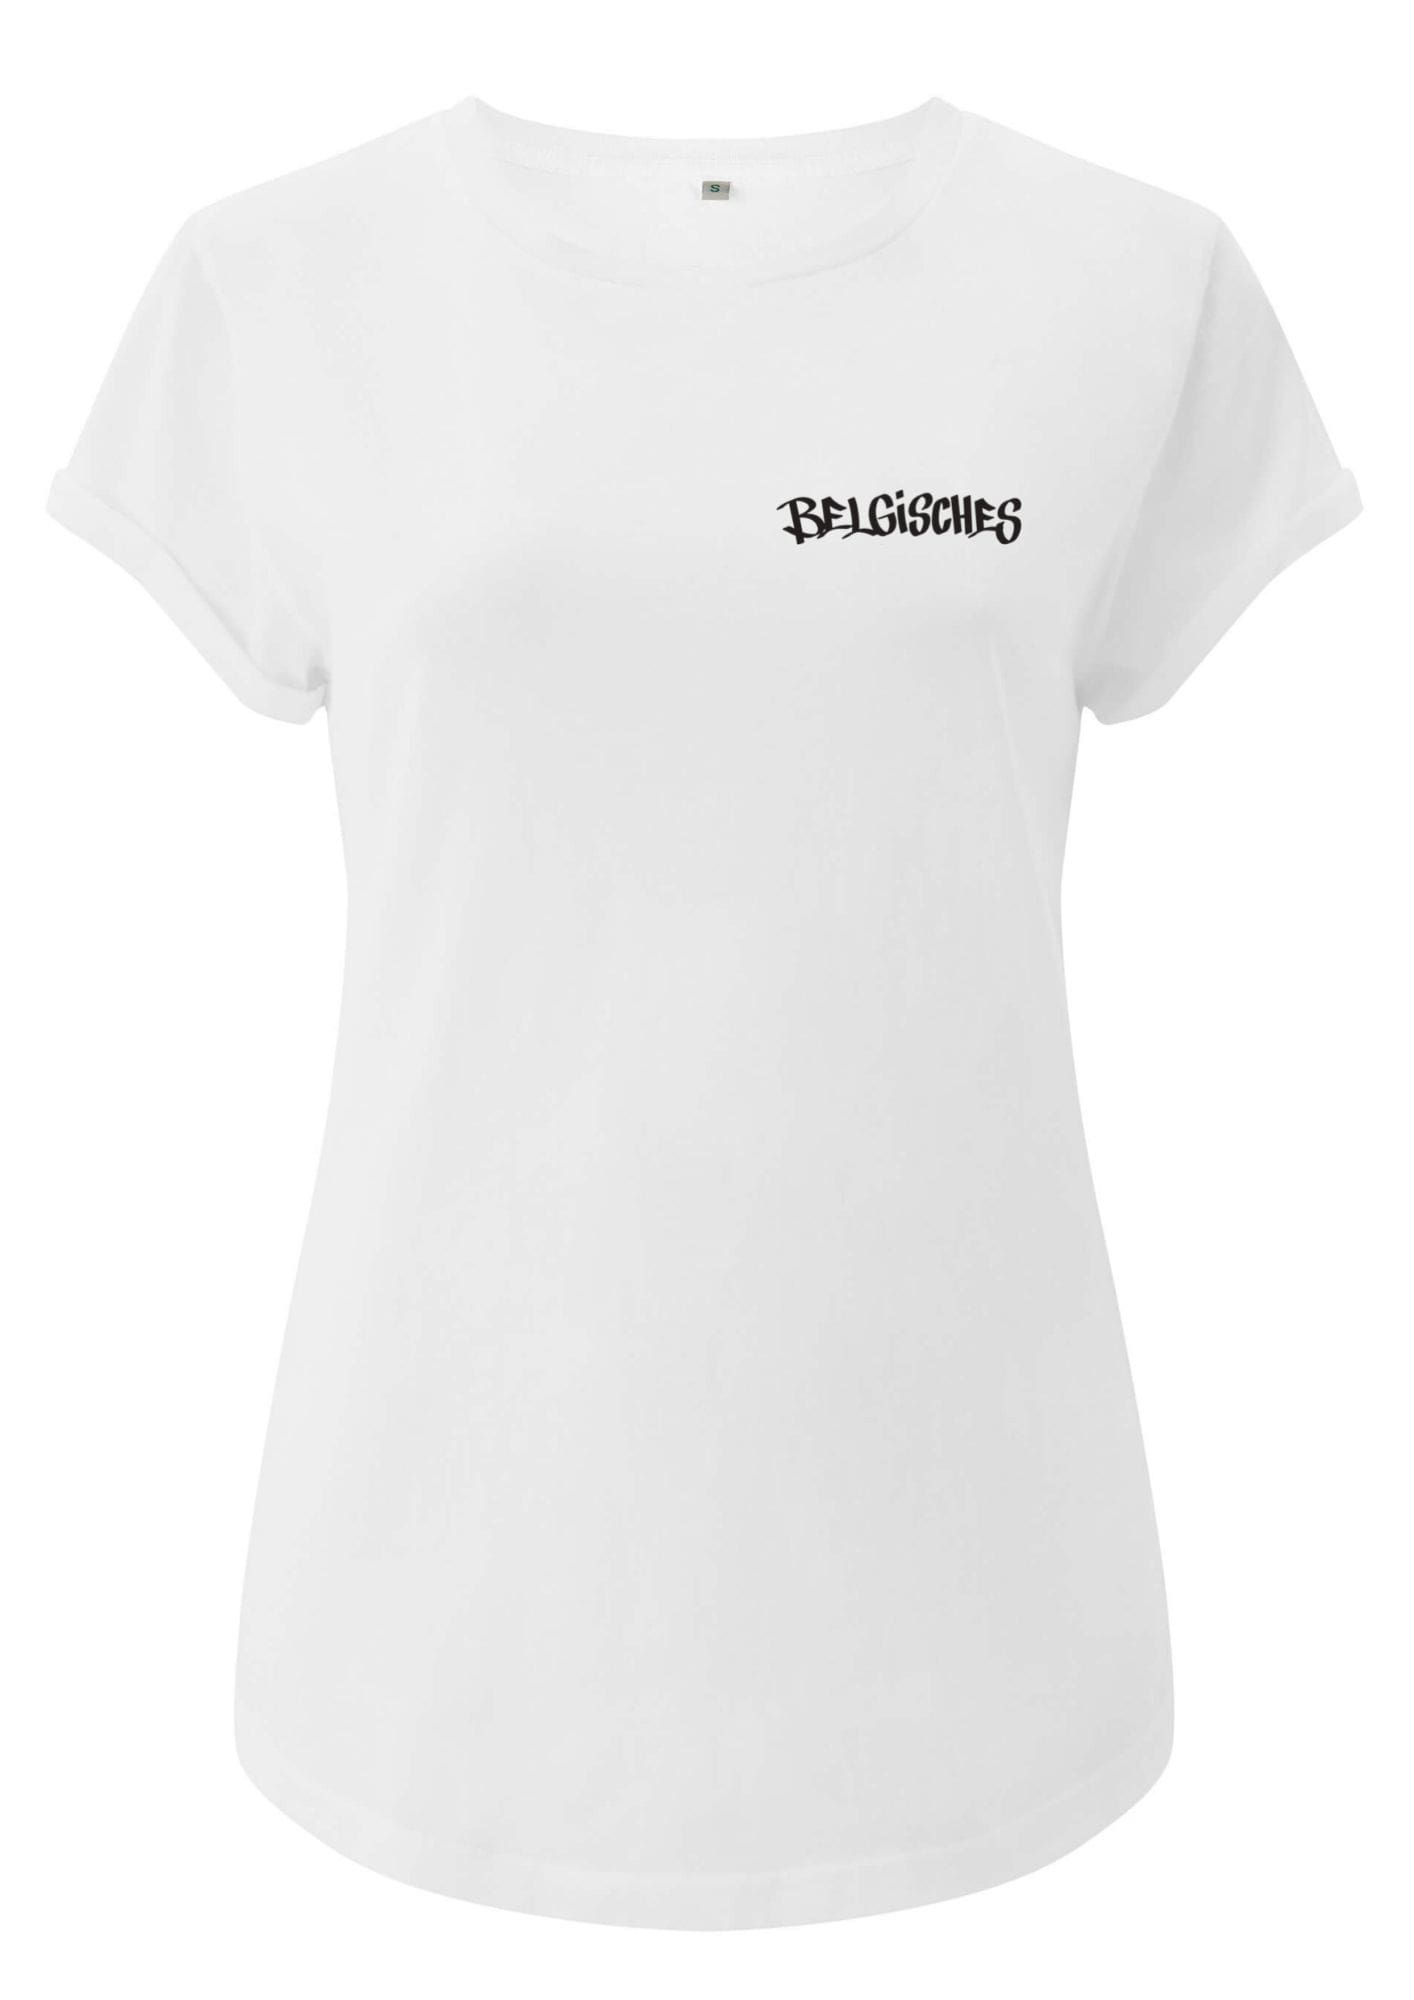 Köln Belgisches T Shirt Frauen Weiß Schwarz